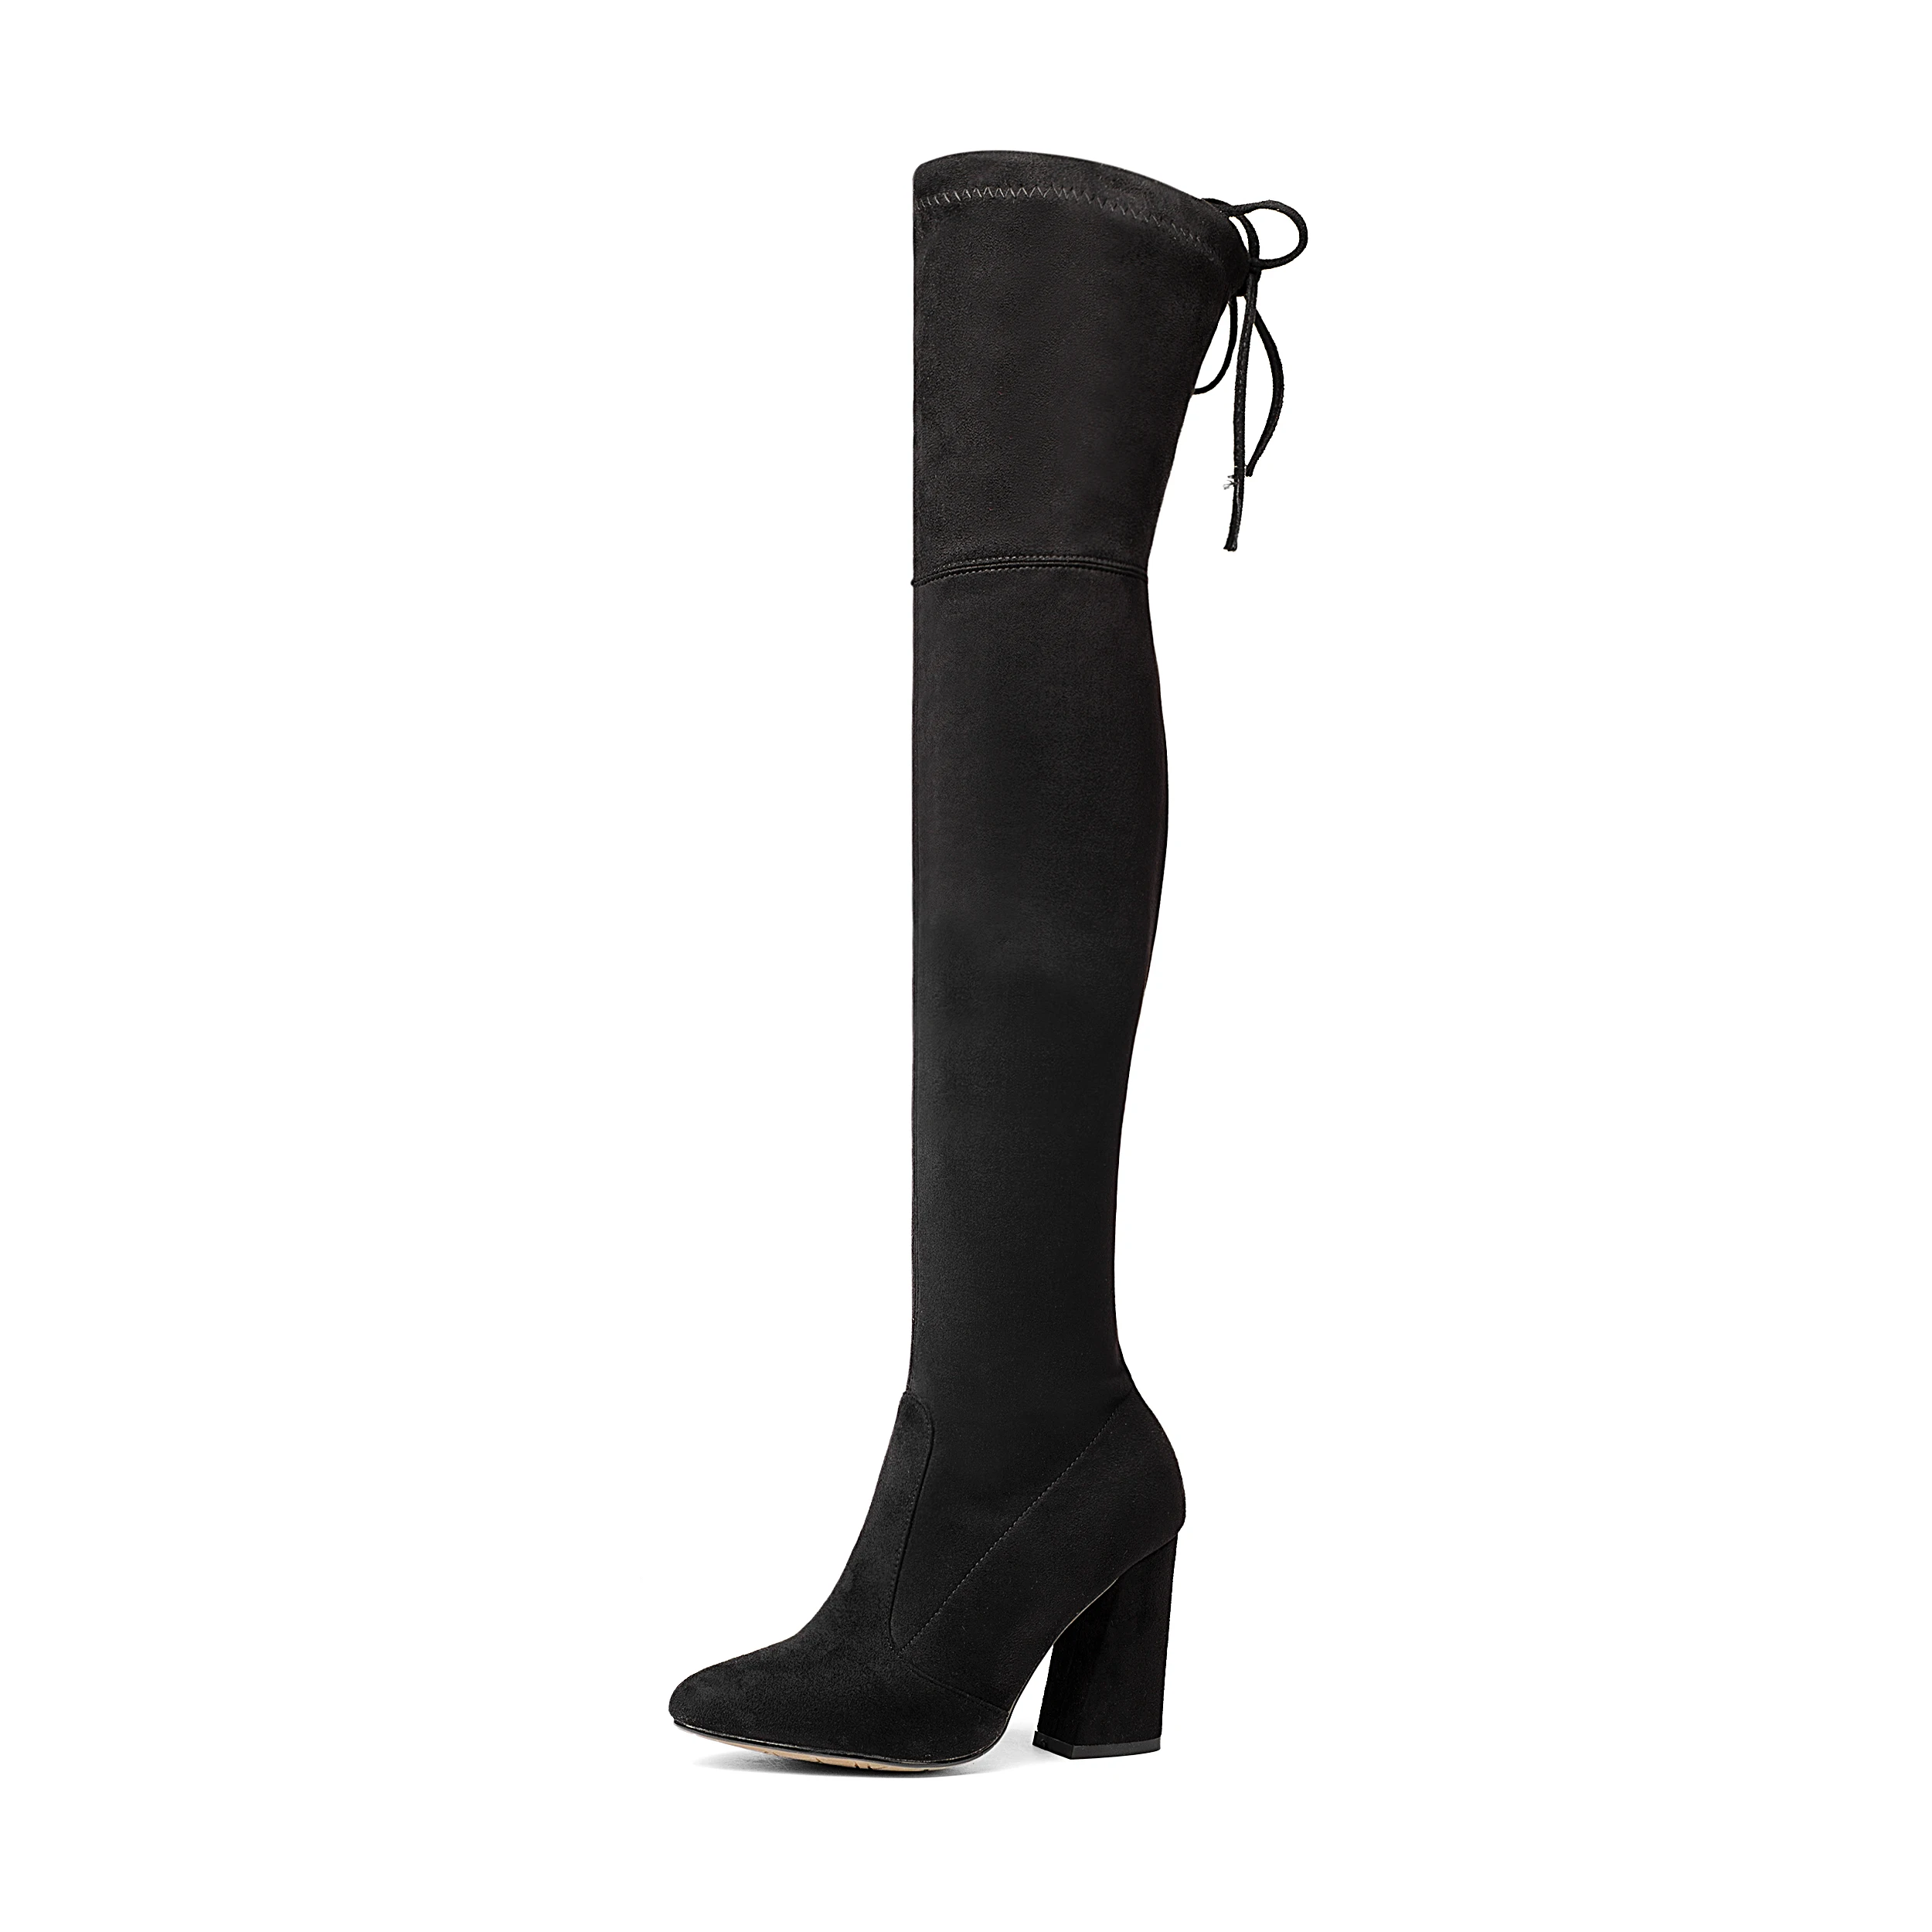 NEMAONE/женские эластичные замшевые ботфорты выше колена; сапоги до бедра; пикантная модная обувь на высоком каблуке размера плюс; женская обувь; коллекция года; Цвет черный, коричневый